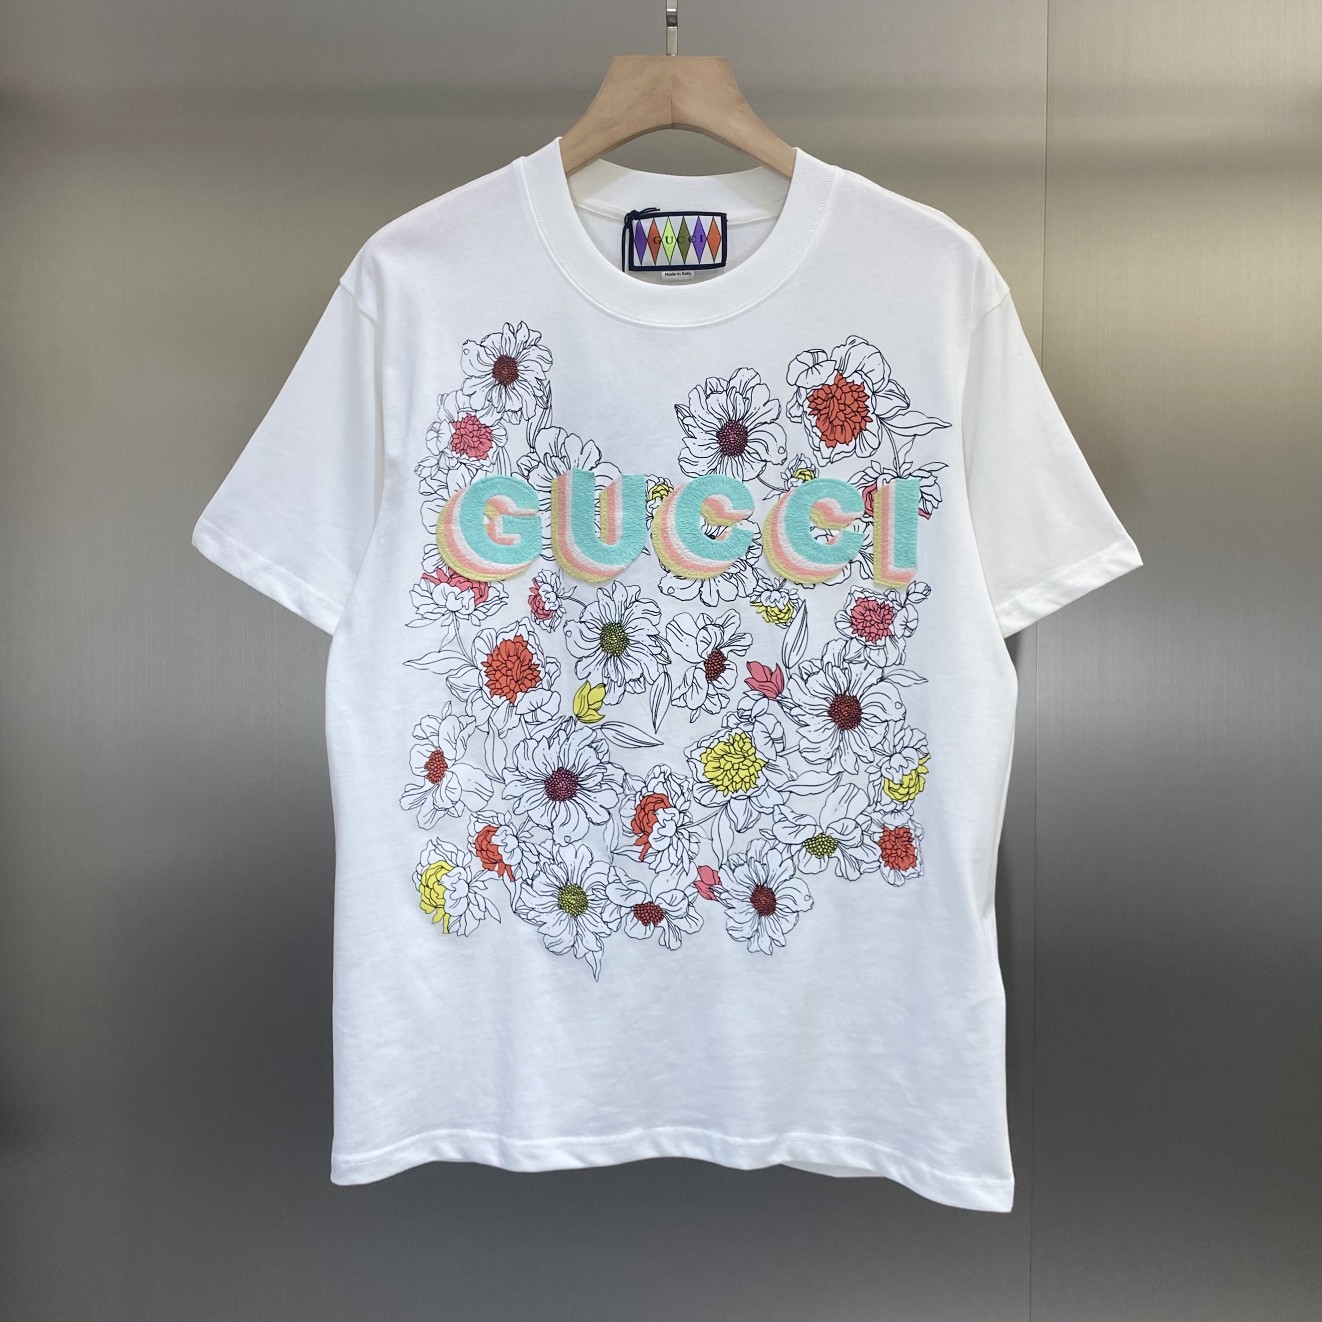 Gui Lovelight系列棉质印花T恤 型号 1001-257